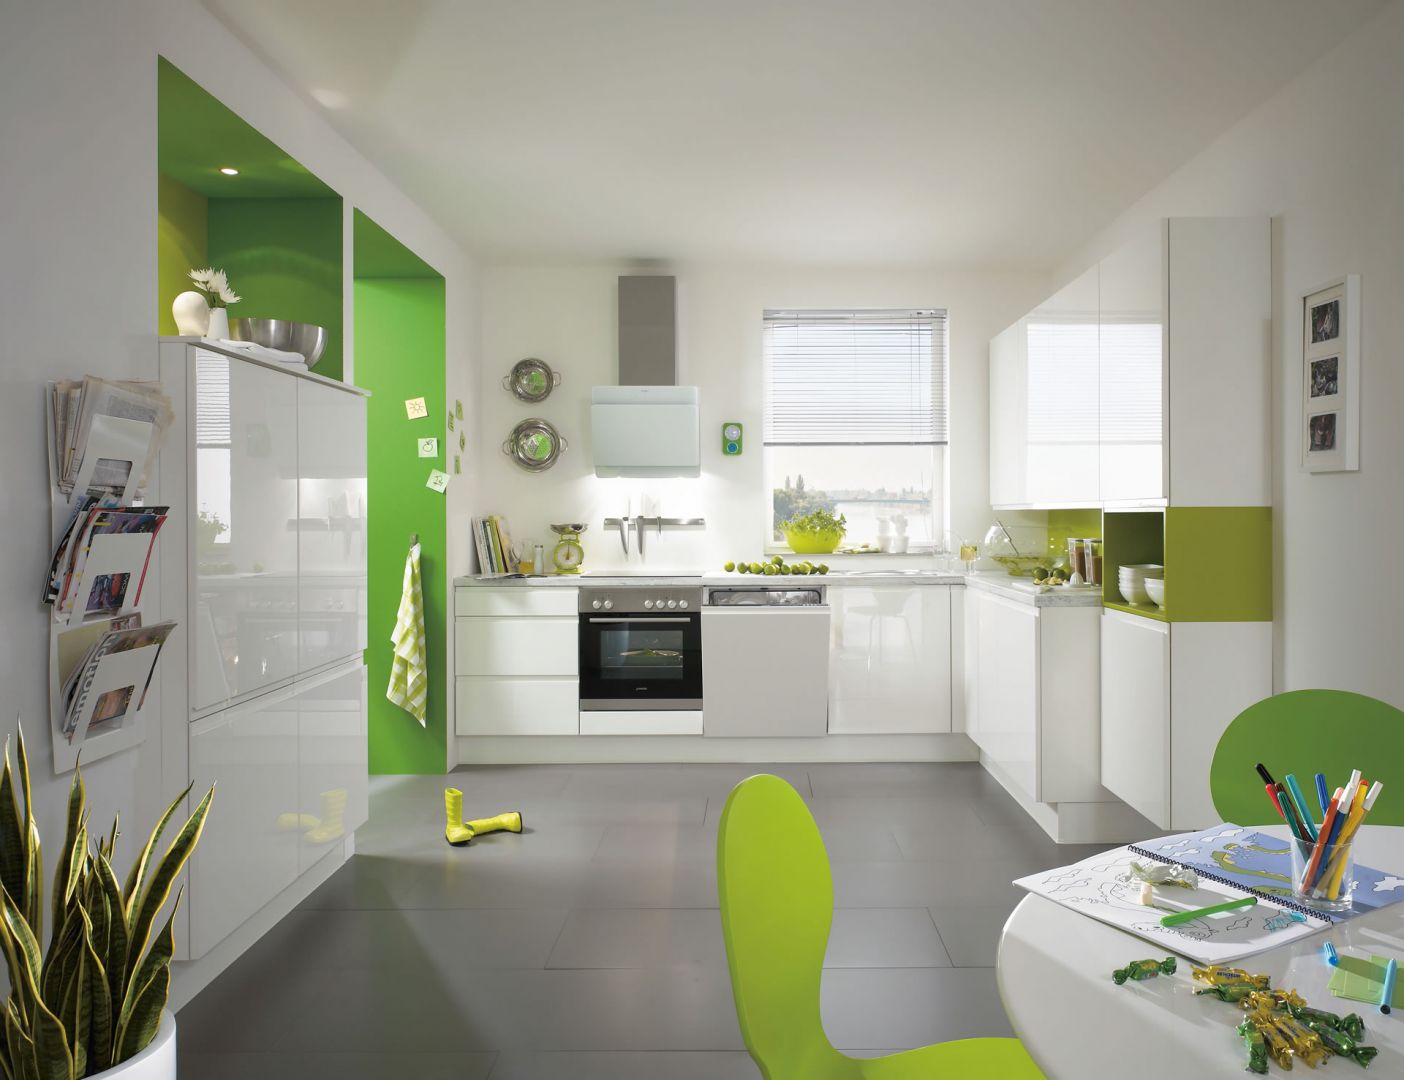 Połączenie bieli na wysoki połysk z soczystą, limonkową zielenią sprawi, że wnętrze będzie energetyczne i wesołe. Na zdjęciu kuchnia Pura 834. Fot. Nobilia